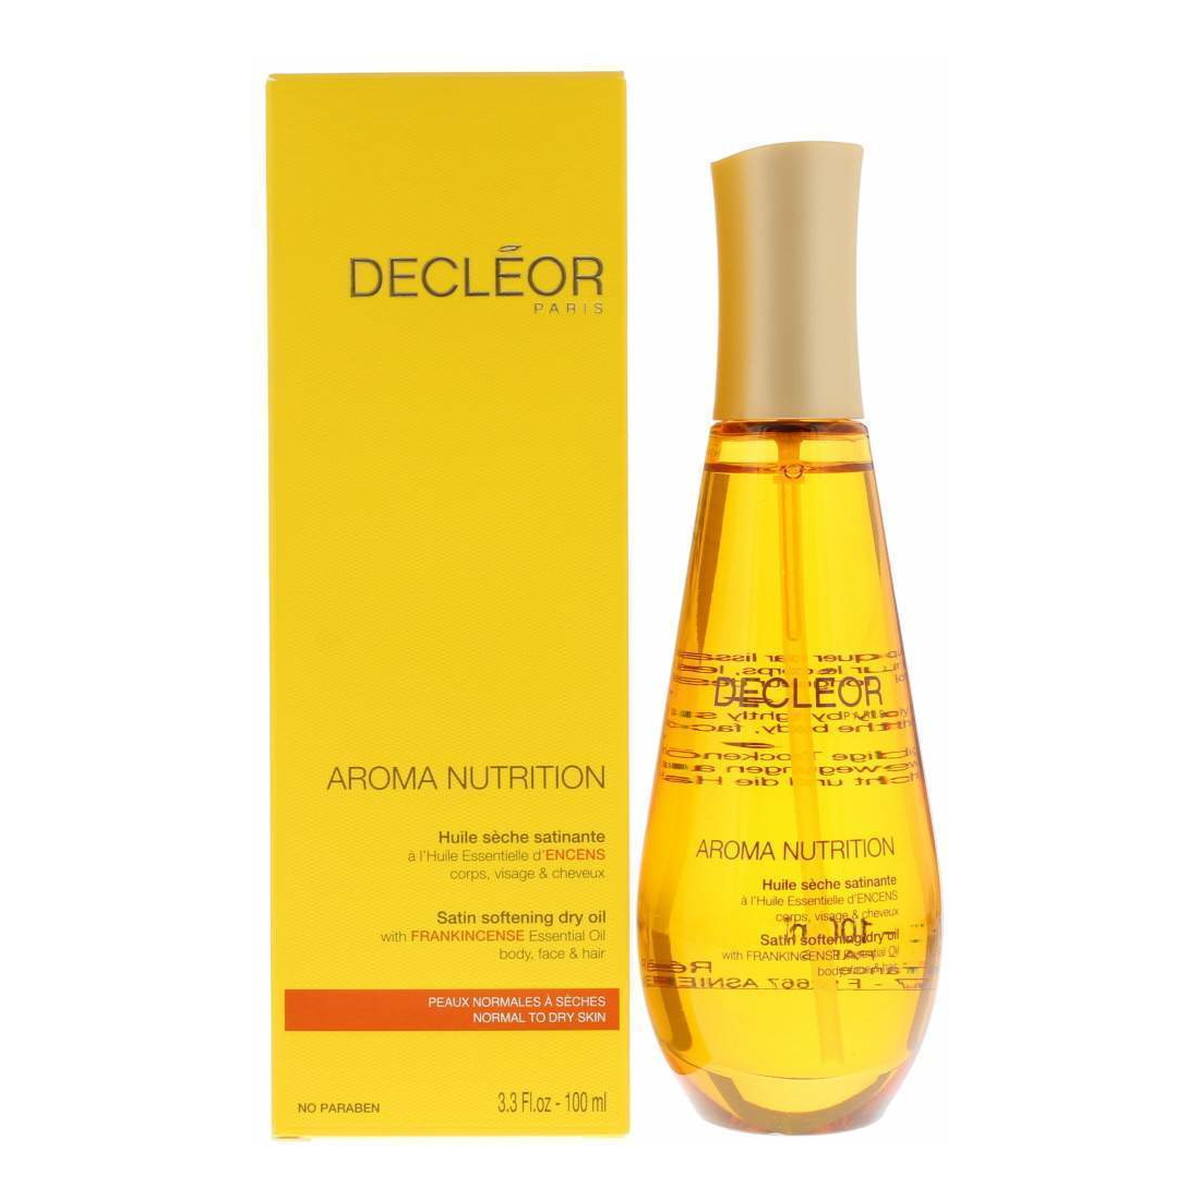 Decleor Aroma Nutrition suchy olejek odżywczy do ciała i włosów 100ml